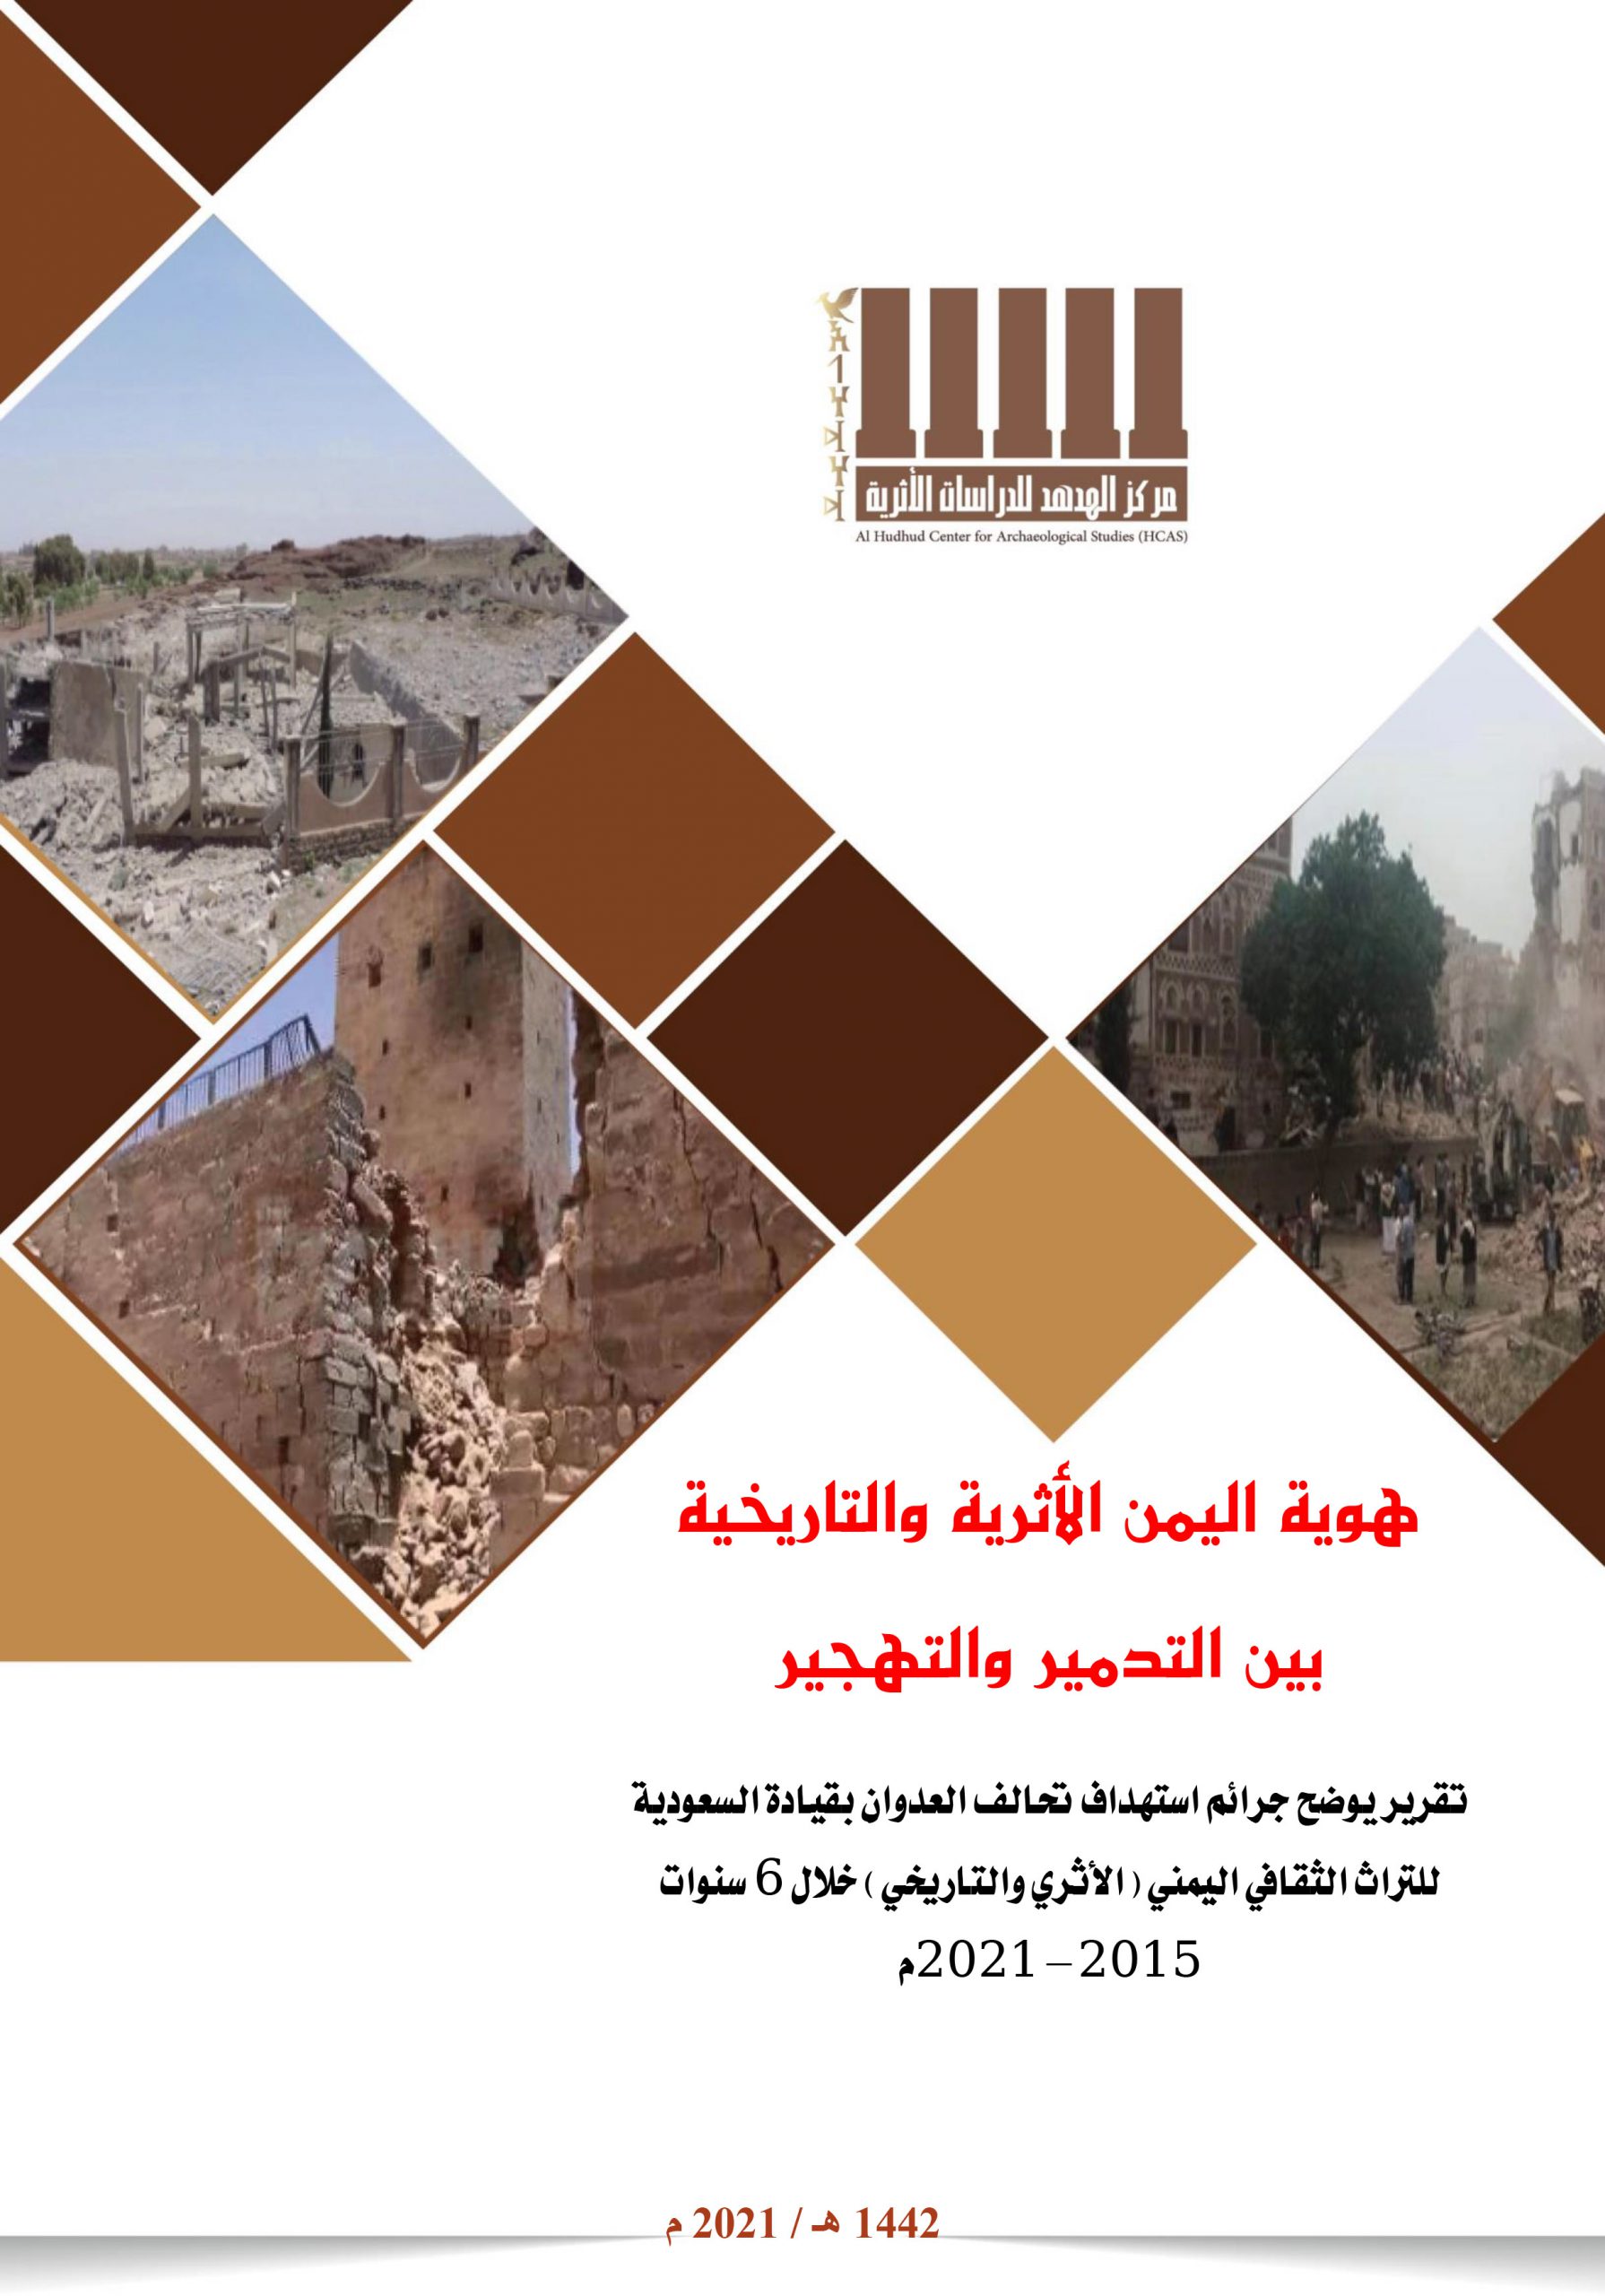 تقرير هوية اليمن الأثرية والتاريخية بين التتدمير والتهجير